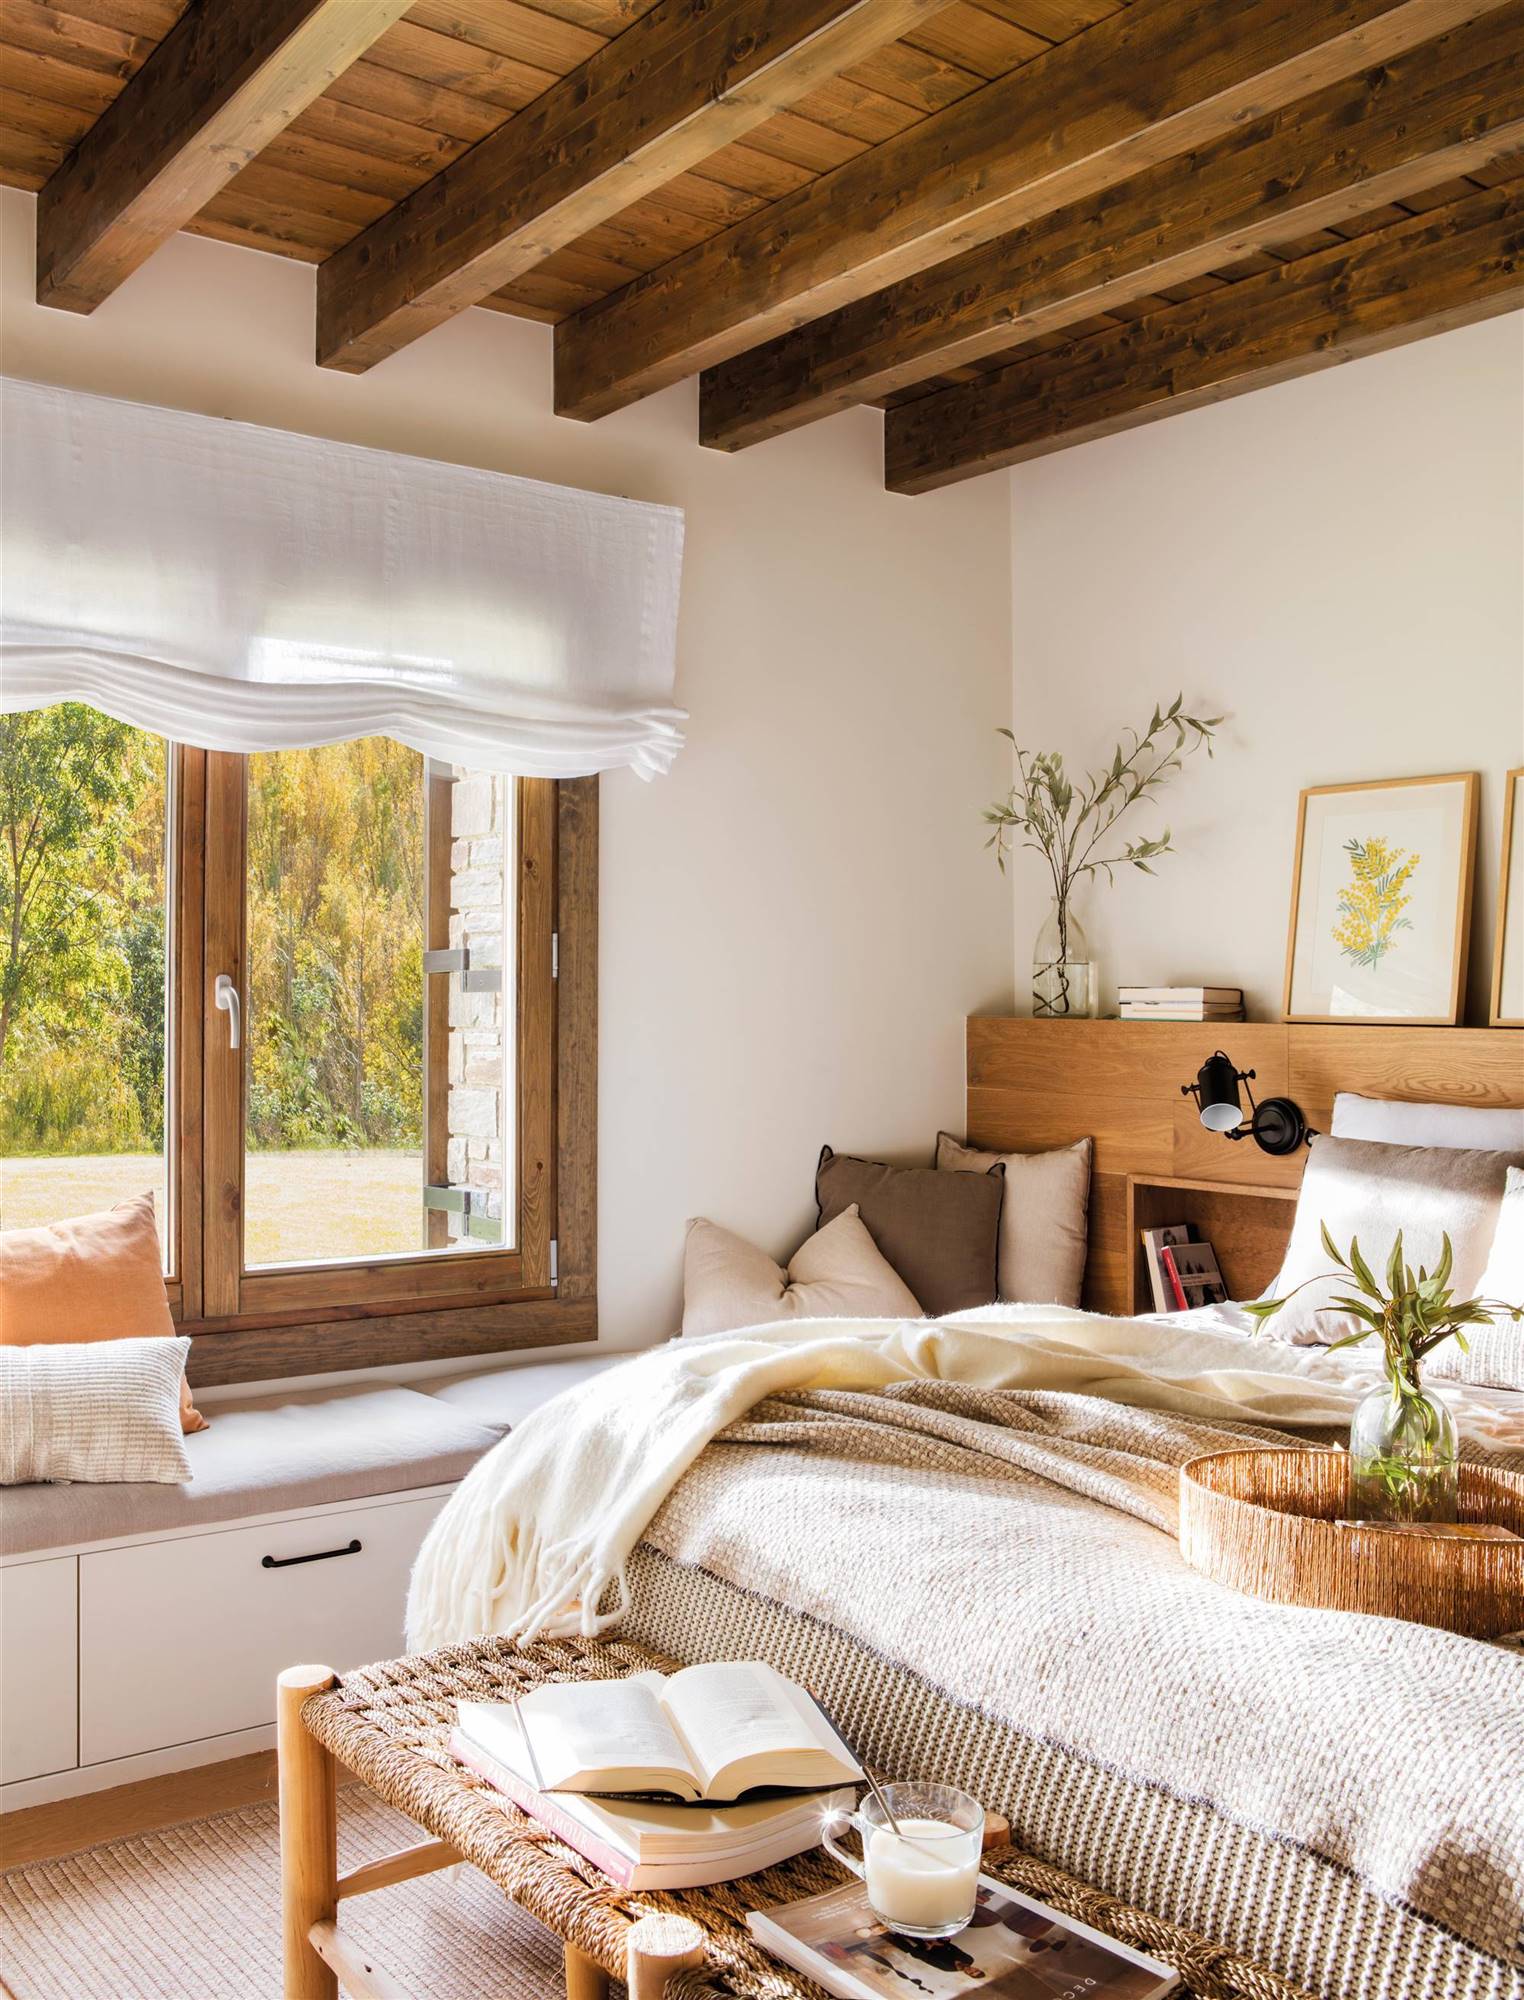 Dormitorio con cabecero de madera, vigas en el techo y banco a los pies.